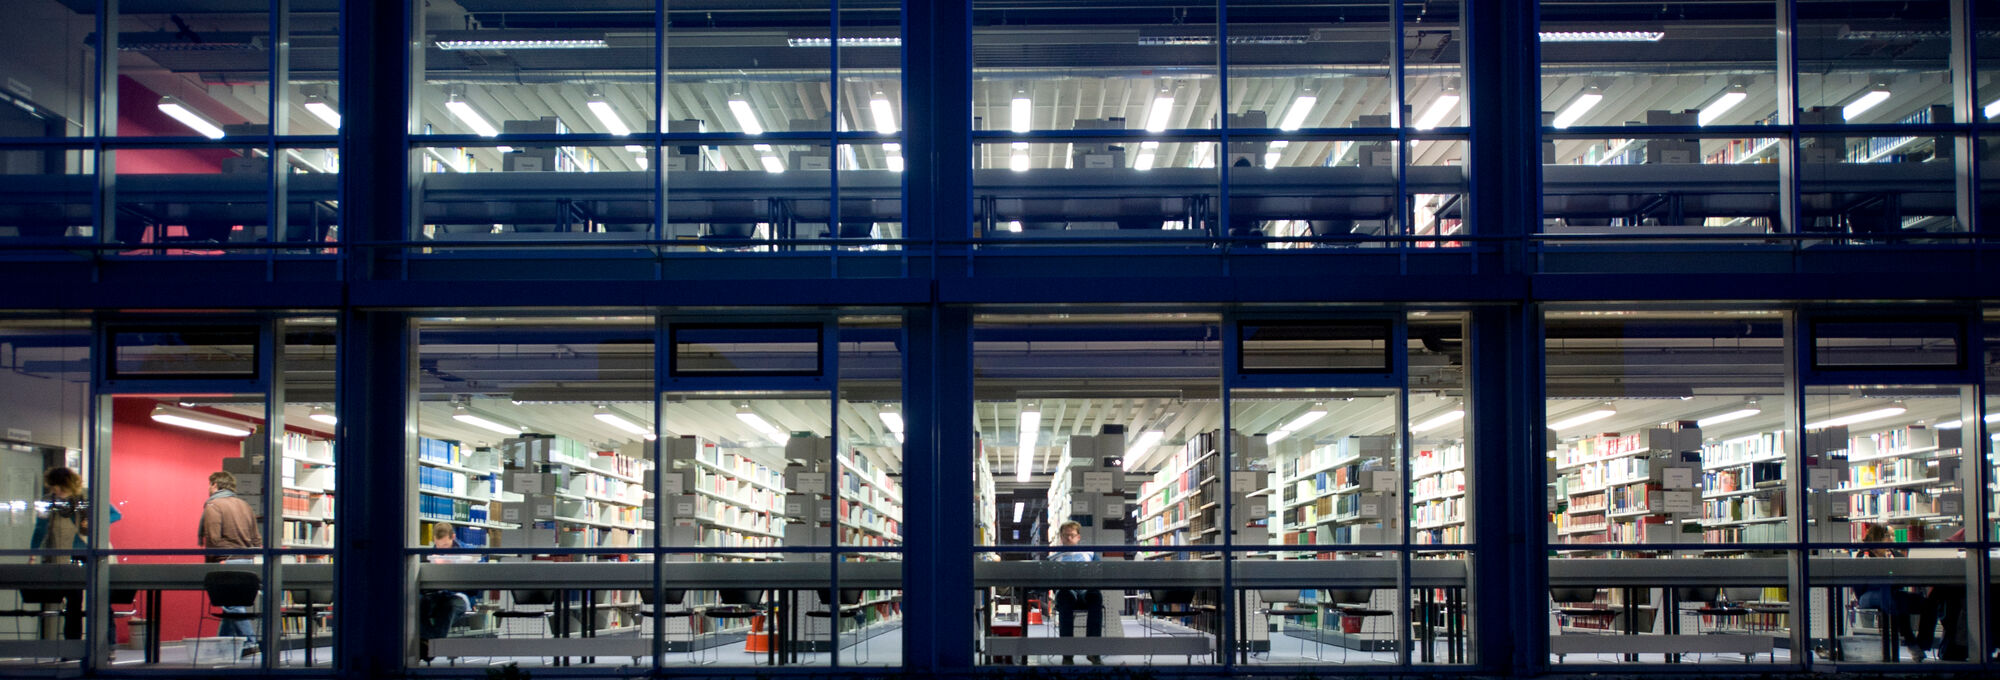 Die Bibliothek der Universität Bayreuth nachts von aussen, hell erleuchtet.